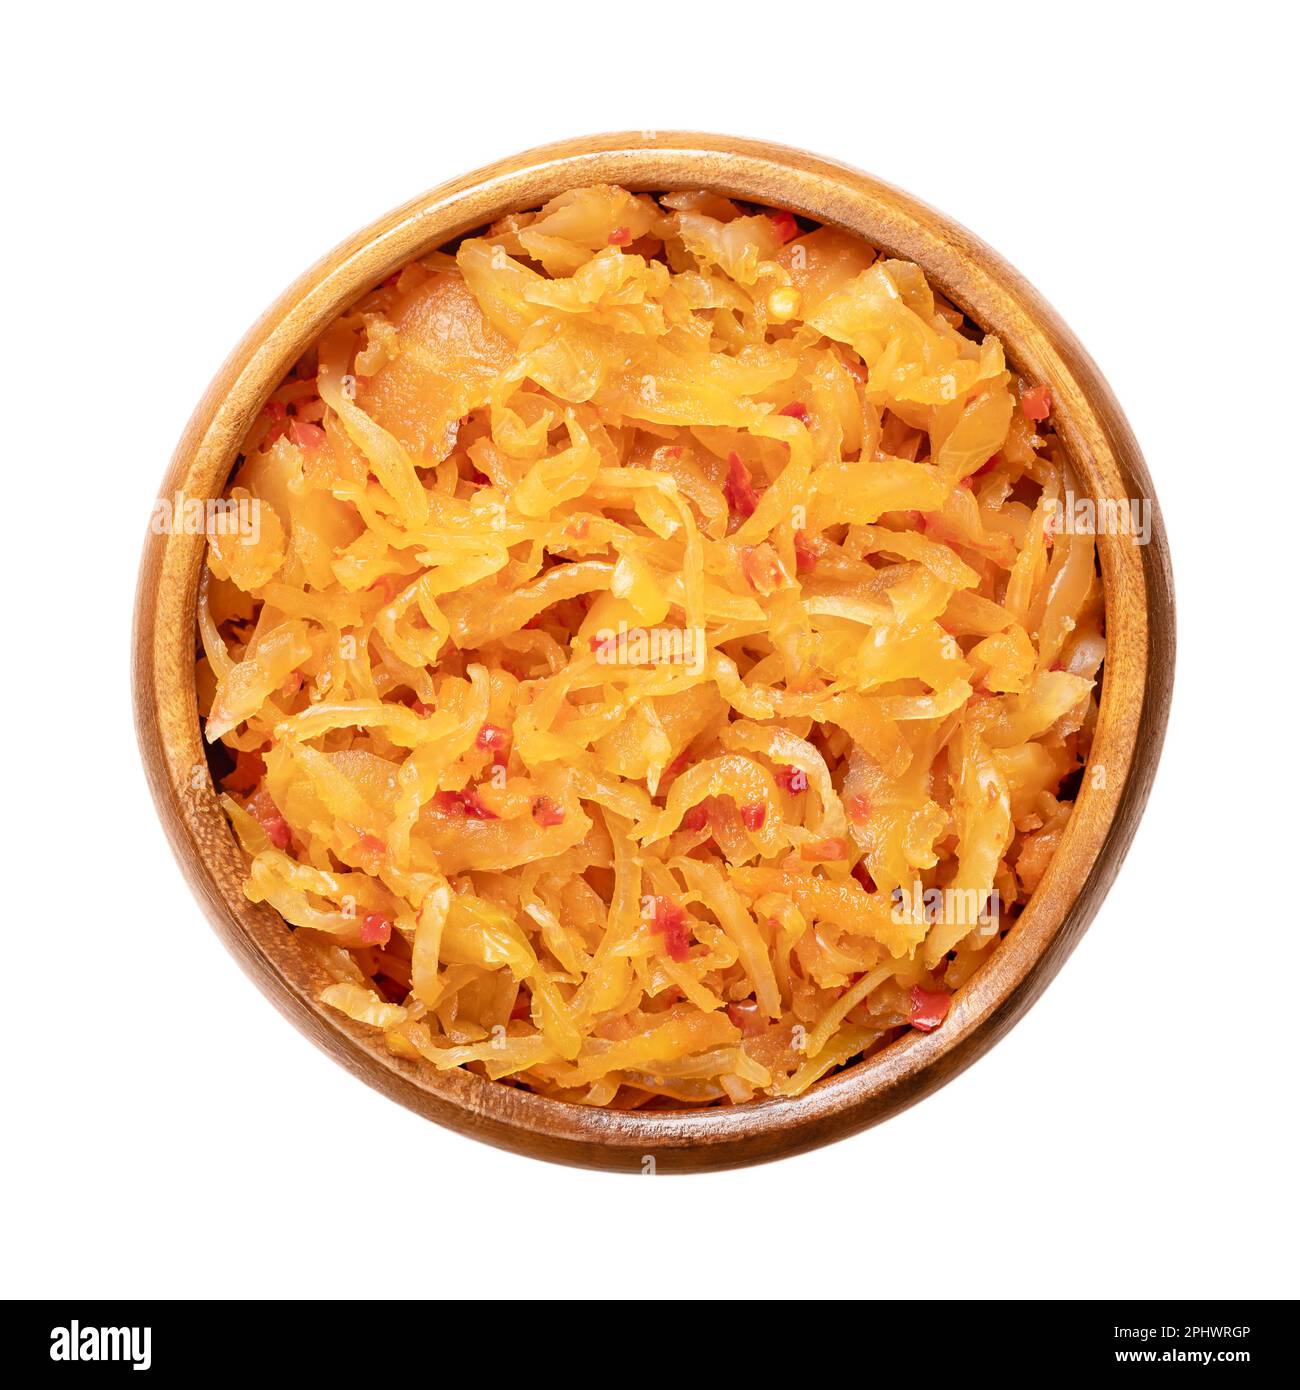 Kimchi, dans un bol en bois. Accompagnement traditionnel coréen de légumes salés et fermentés chou, carottes, radis et oignons, assaisonnés. Banque D'Images